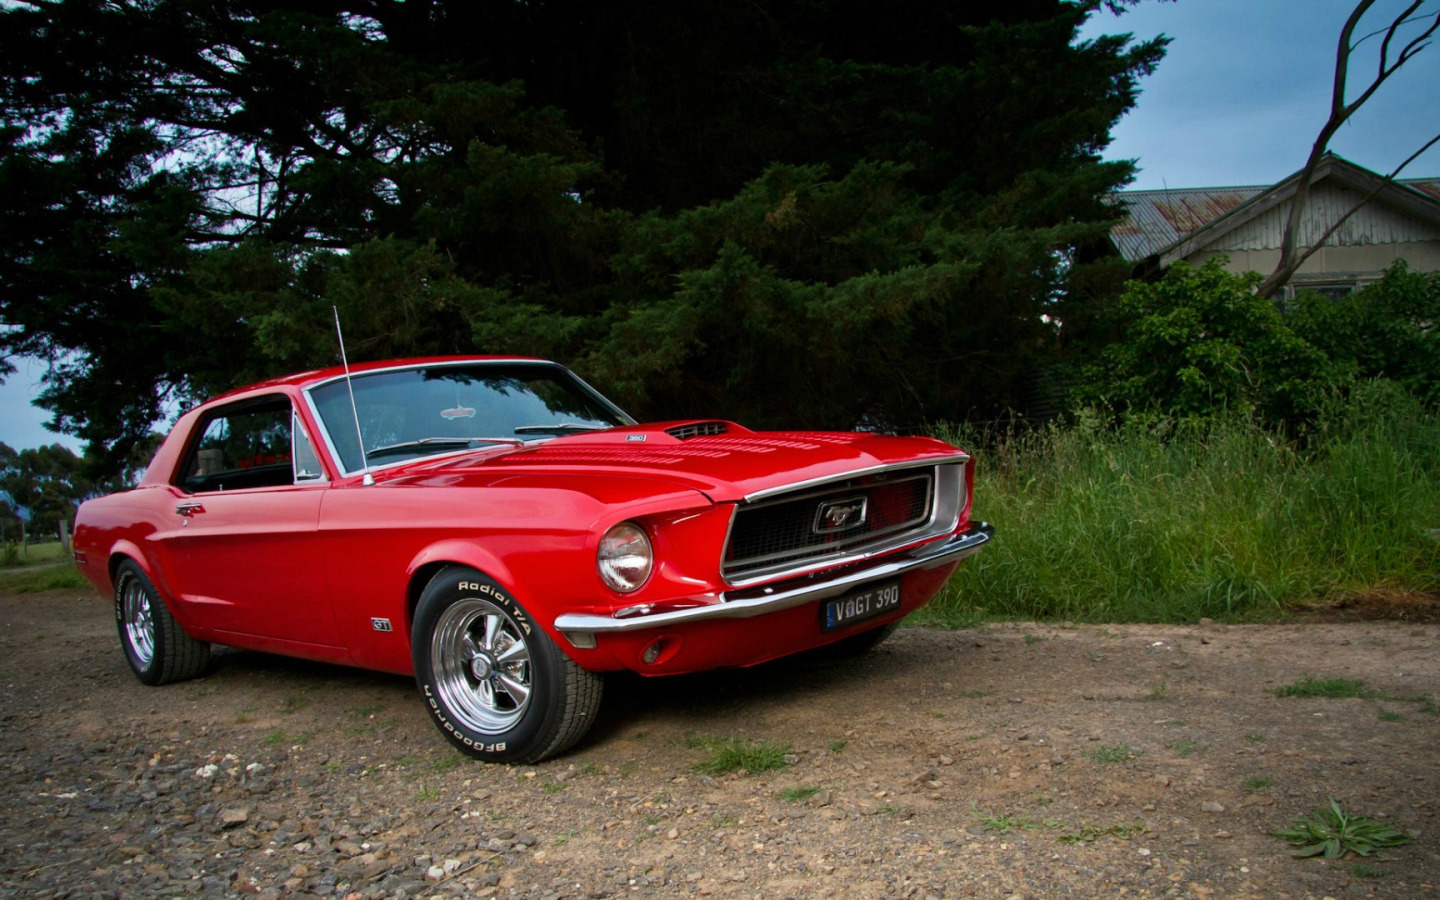 เปิดตำนาน 50 ปีของ Ford Mustang ต้นตำรับ Muscle Car พันธุ์ ...